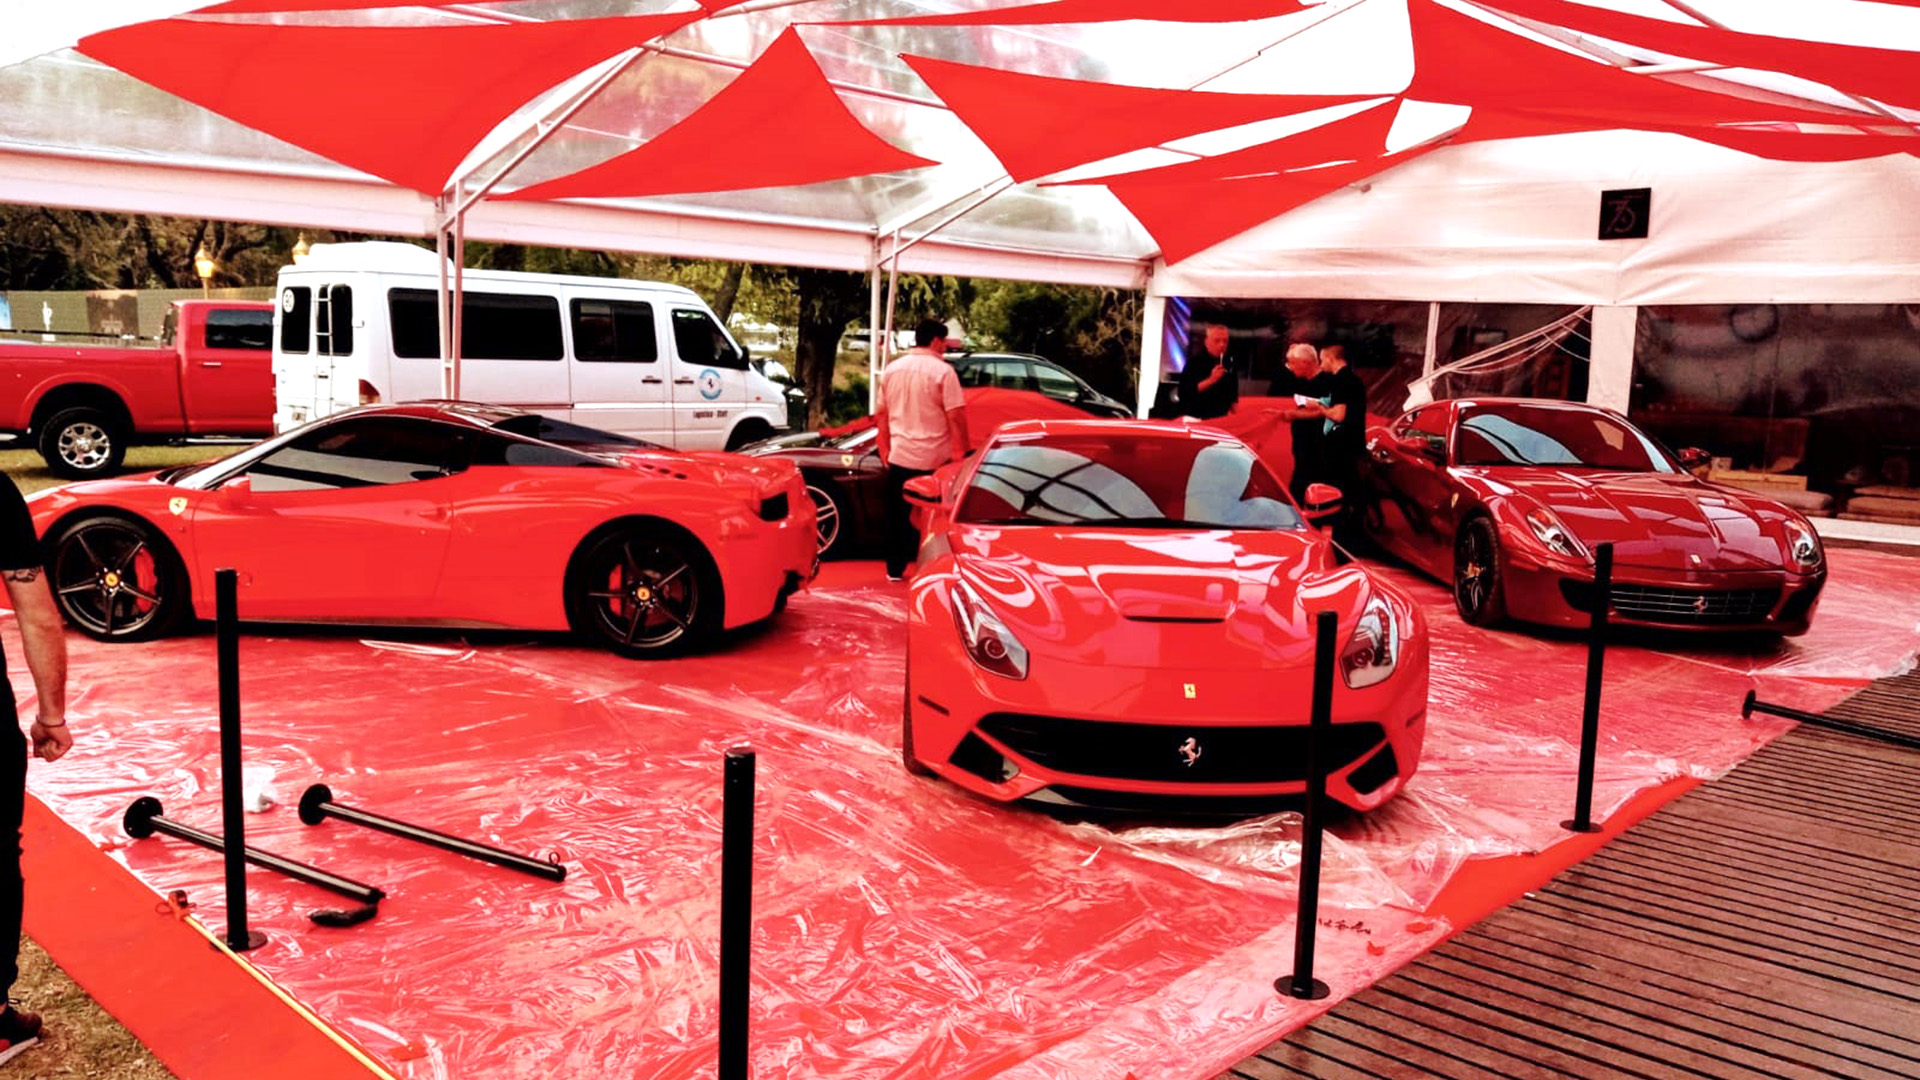 Además de clásicos, habrá espacios para rendir homenajes como el de los 75 años de Ferrari, donde se exhiben modelos actuales